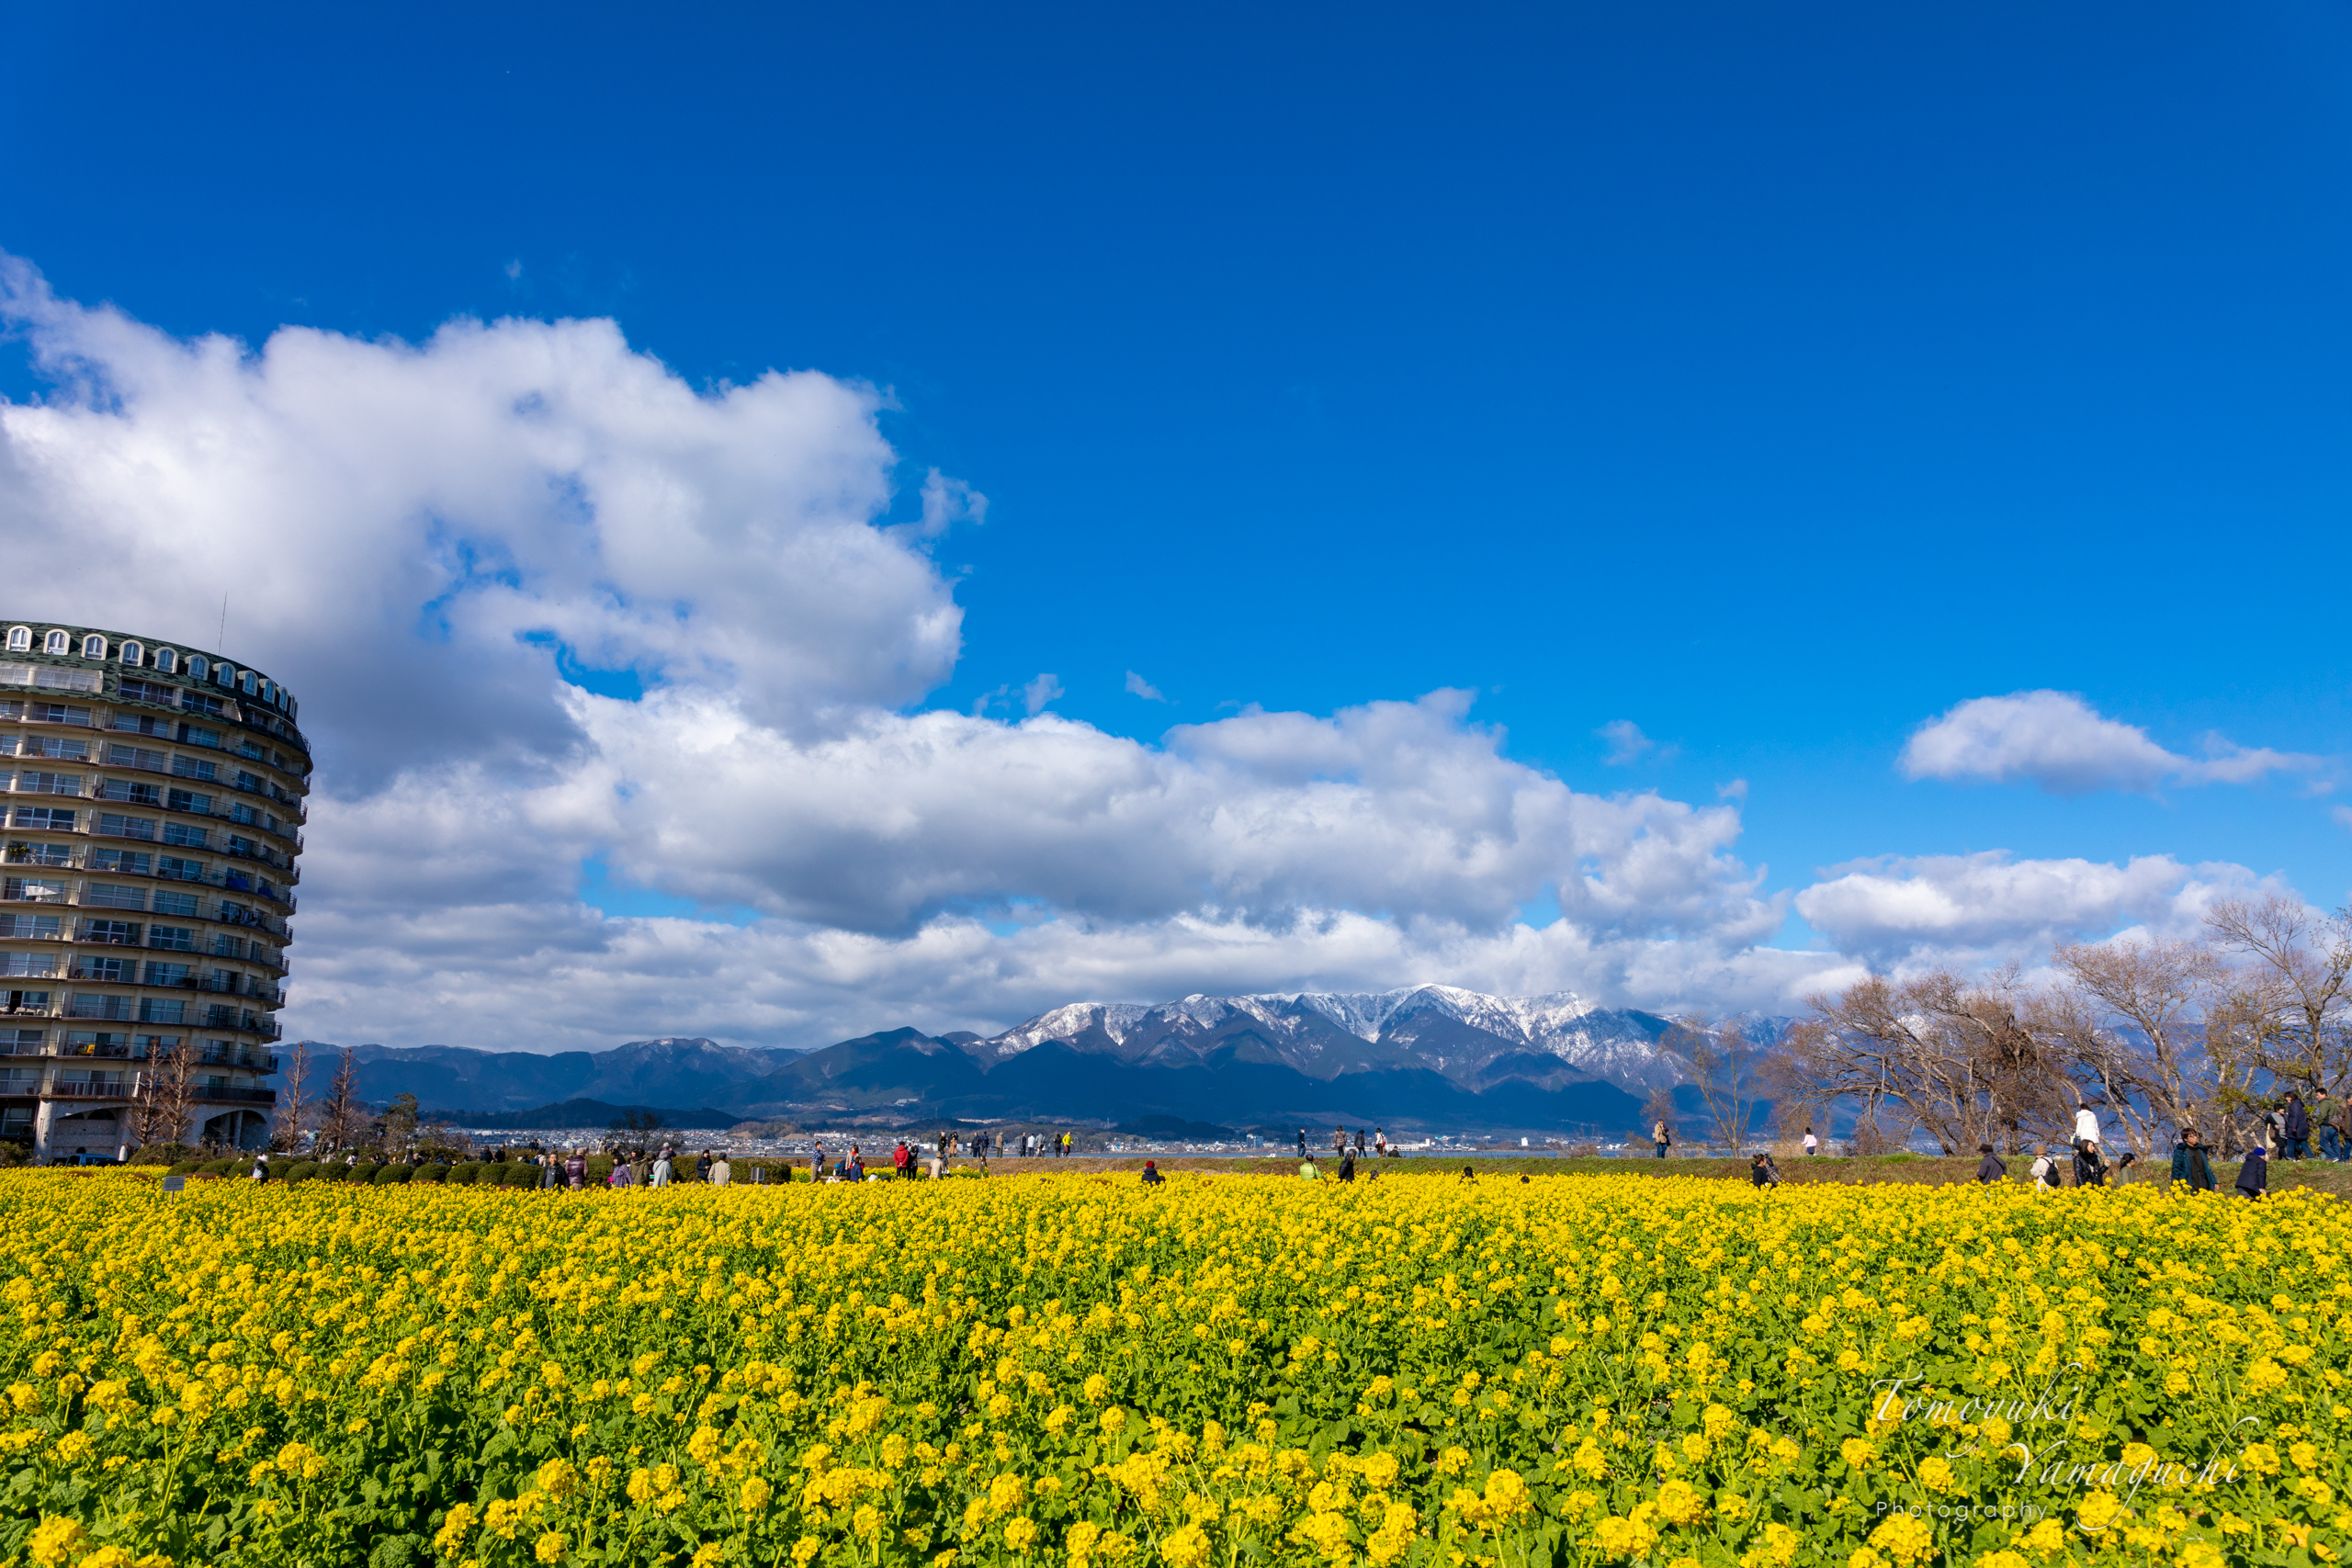 冬と春が同居する景色。雪山と早咲きの菜の花の コラボを撮影